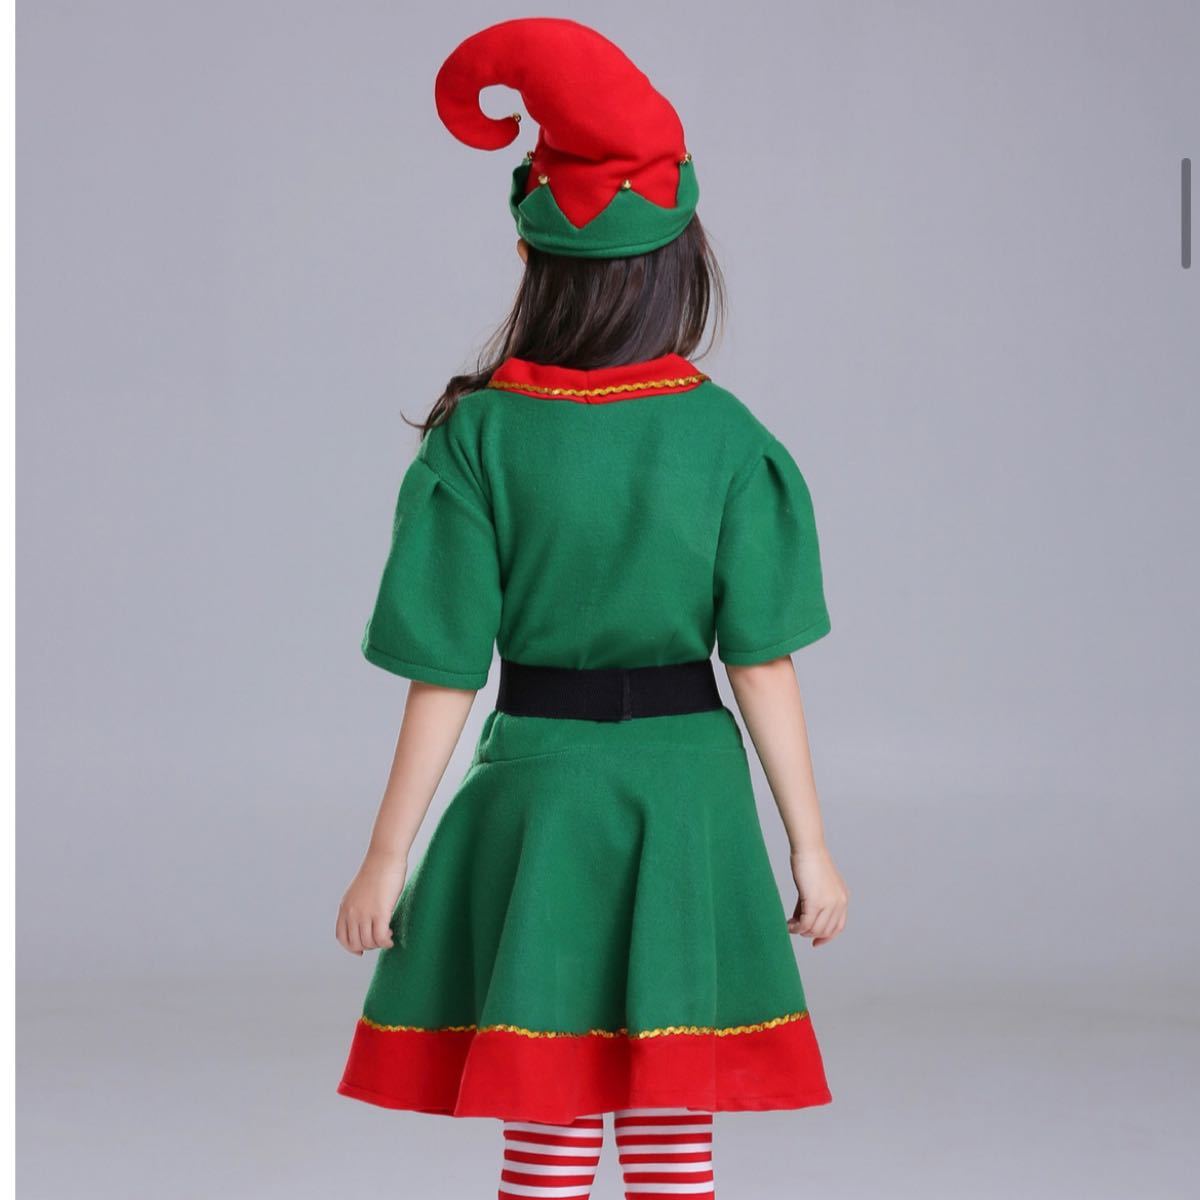 110 ハロウィン クリスマス 衣装 サンタクロース コスプレ 女の子 ワンピース 子供服 パーティー 